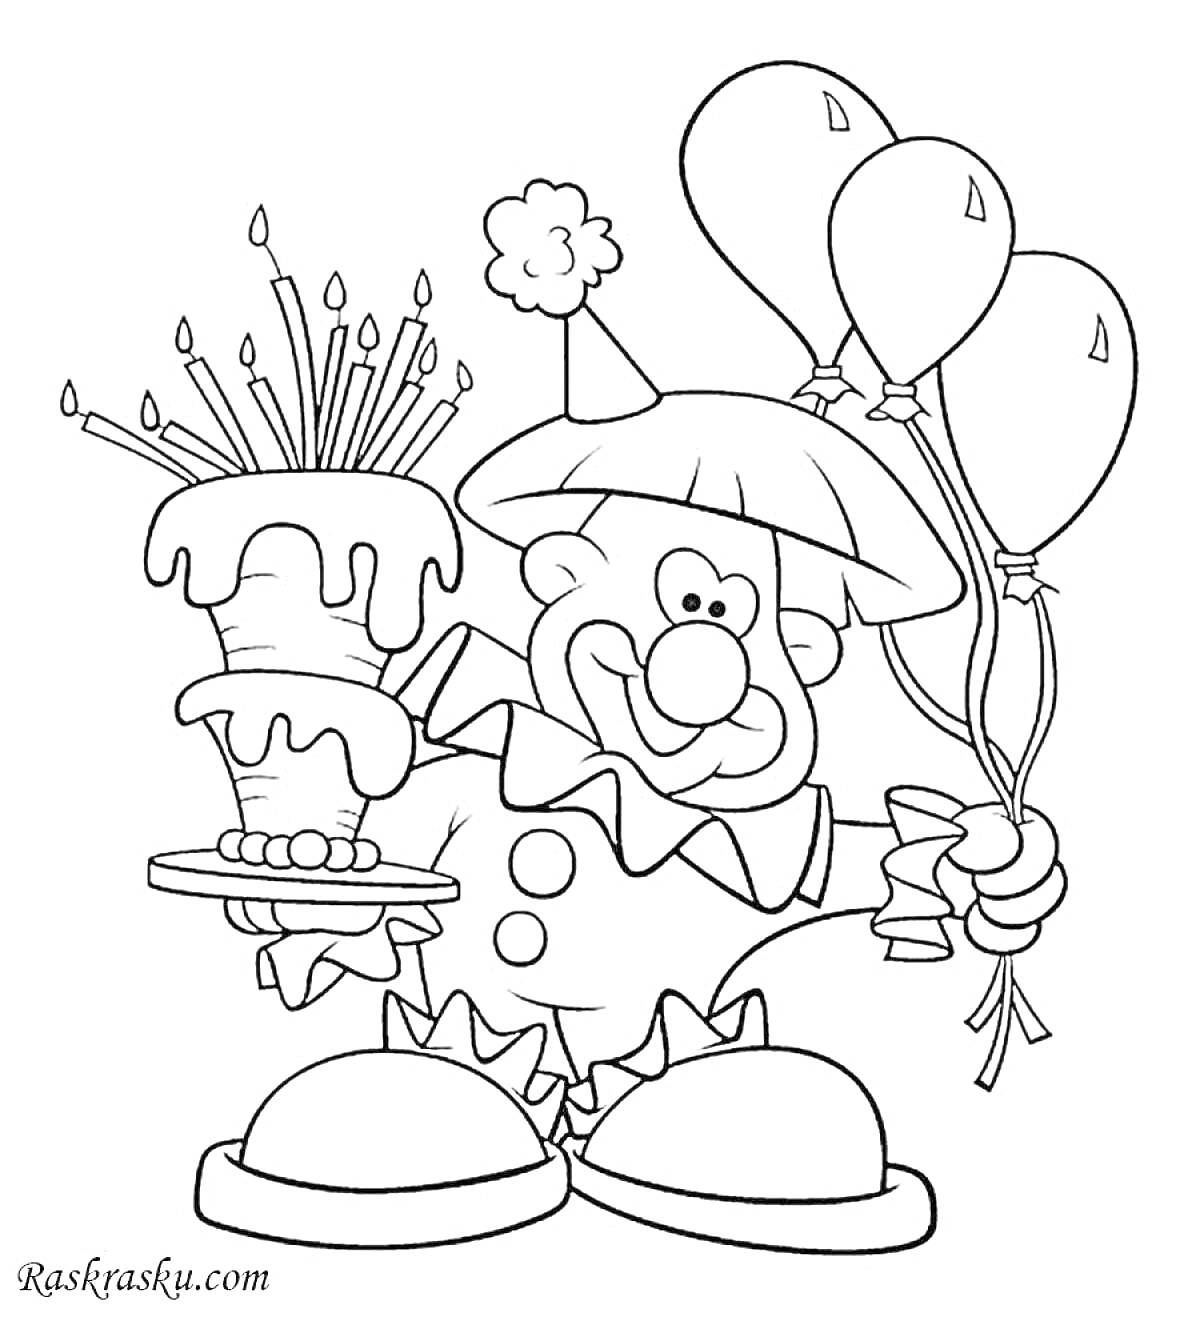 Раскраска Клоун с тортом и воздушными шарами на день рождения